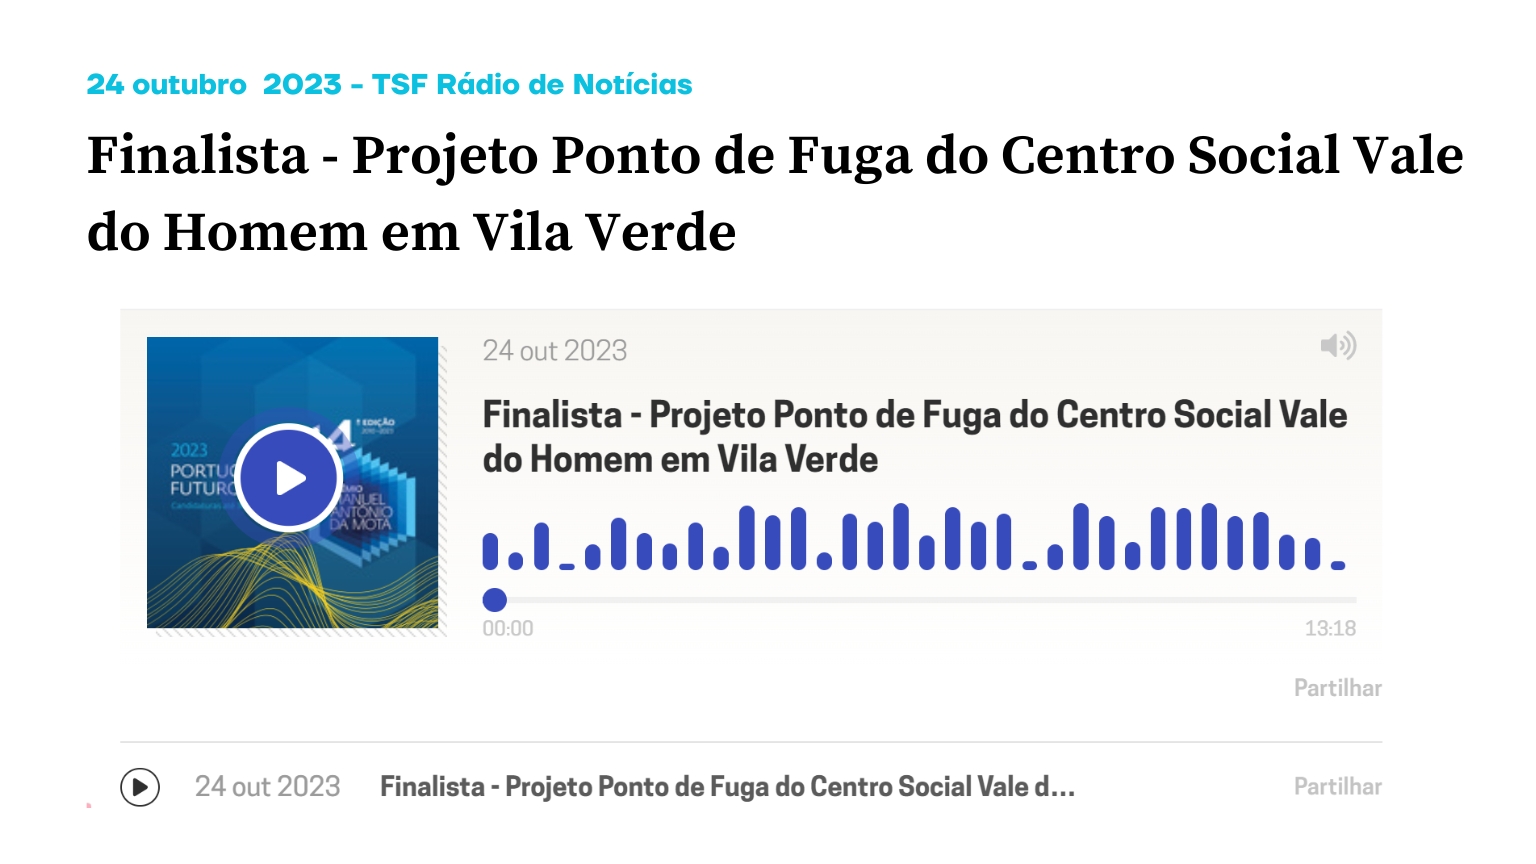 Finalista - Projeto Ponto de Fuga do Centro Social Vale do Homem em Vila Verde